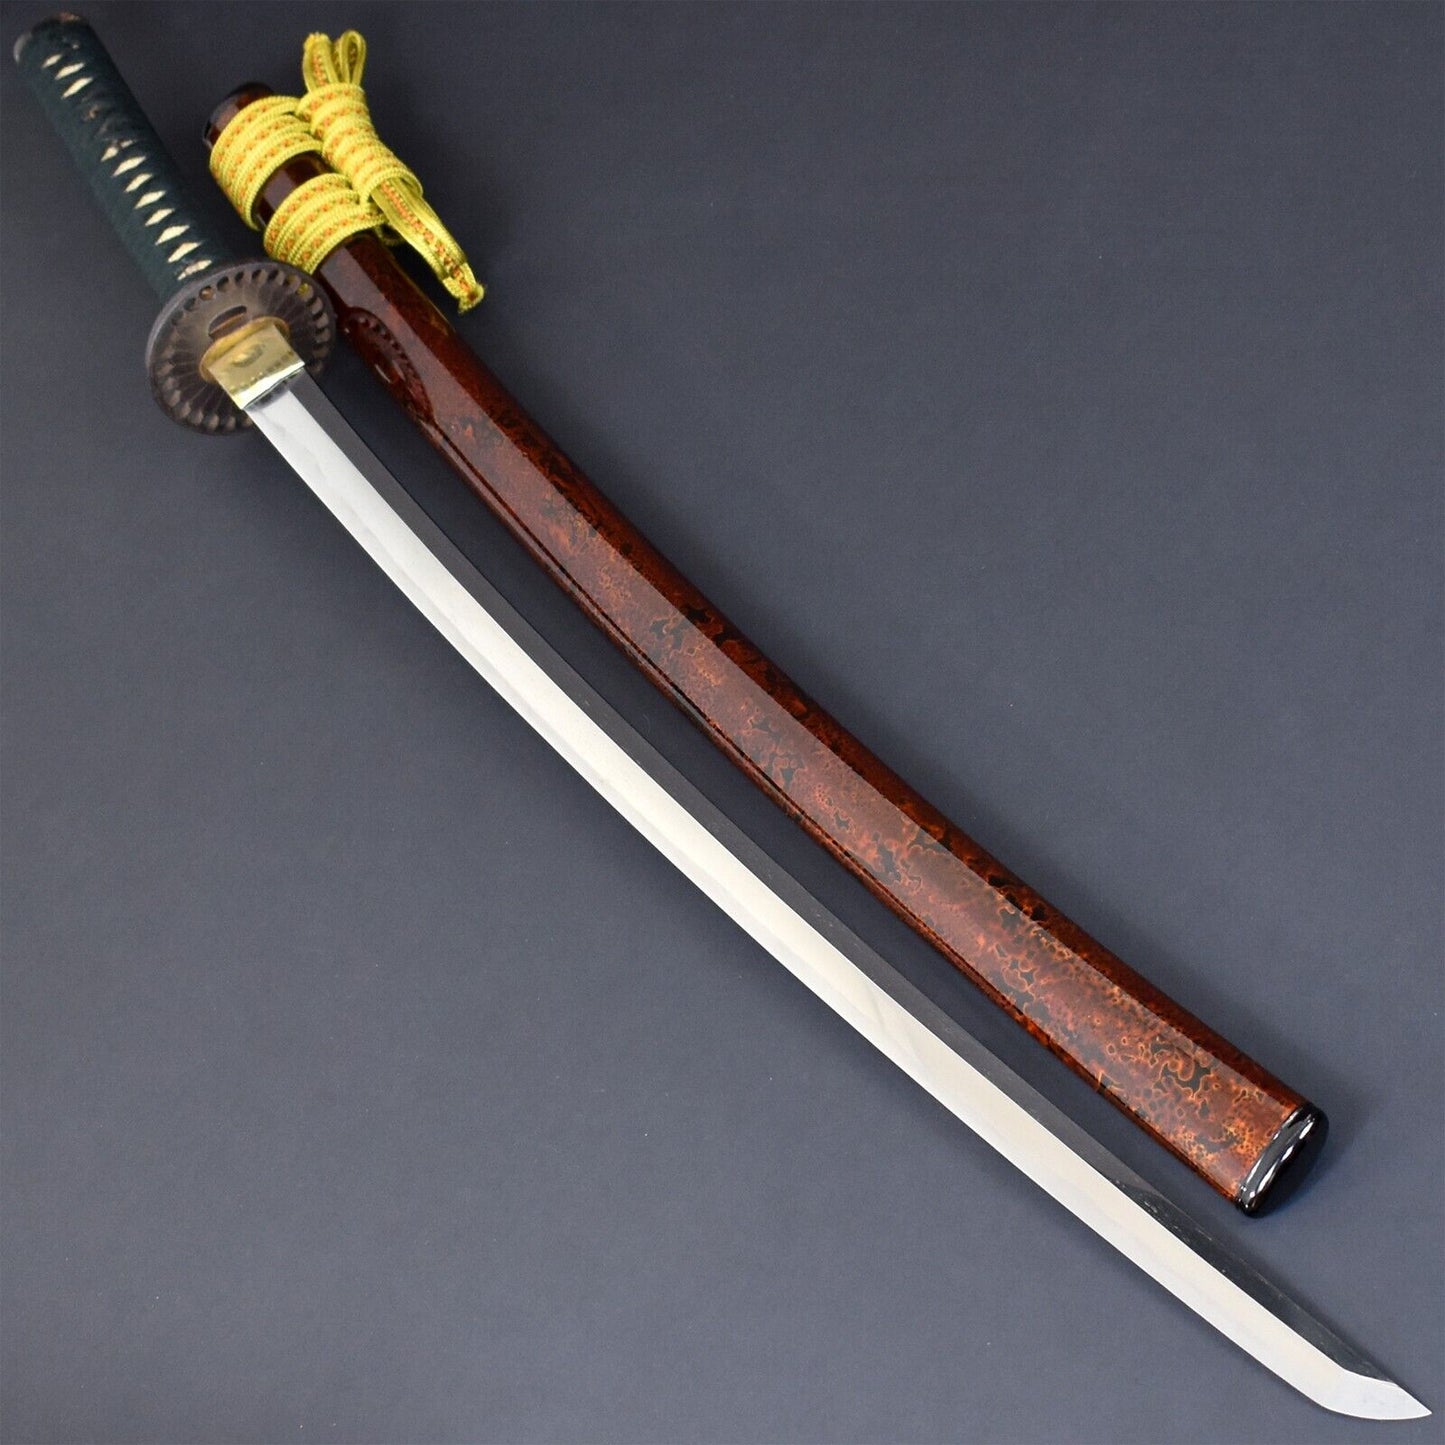 Original Old Collectible Japanese Nihonto Sword Samurai Weapon Katana from Sengoku Period.